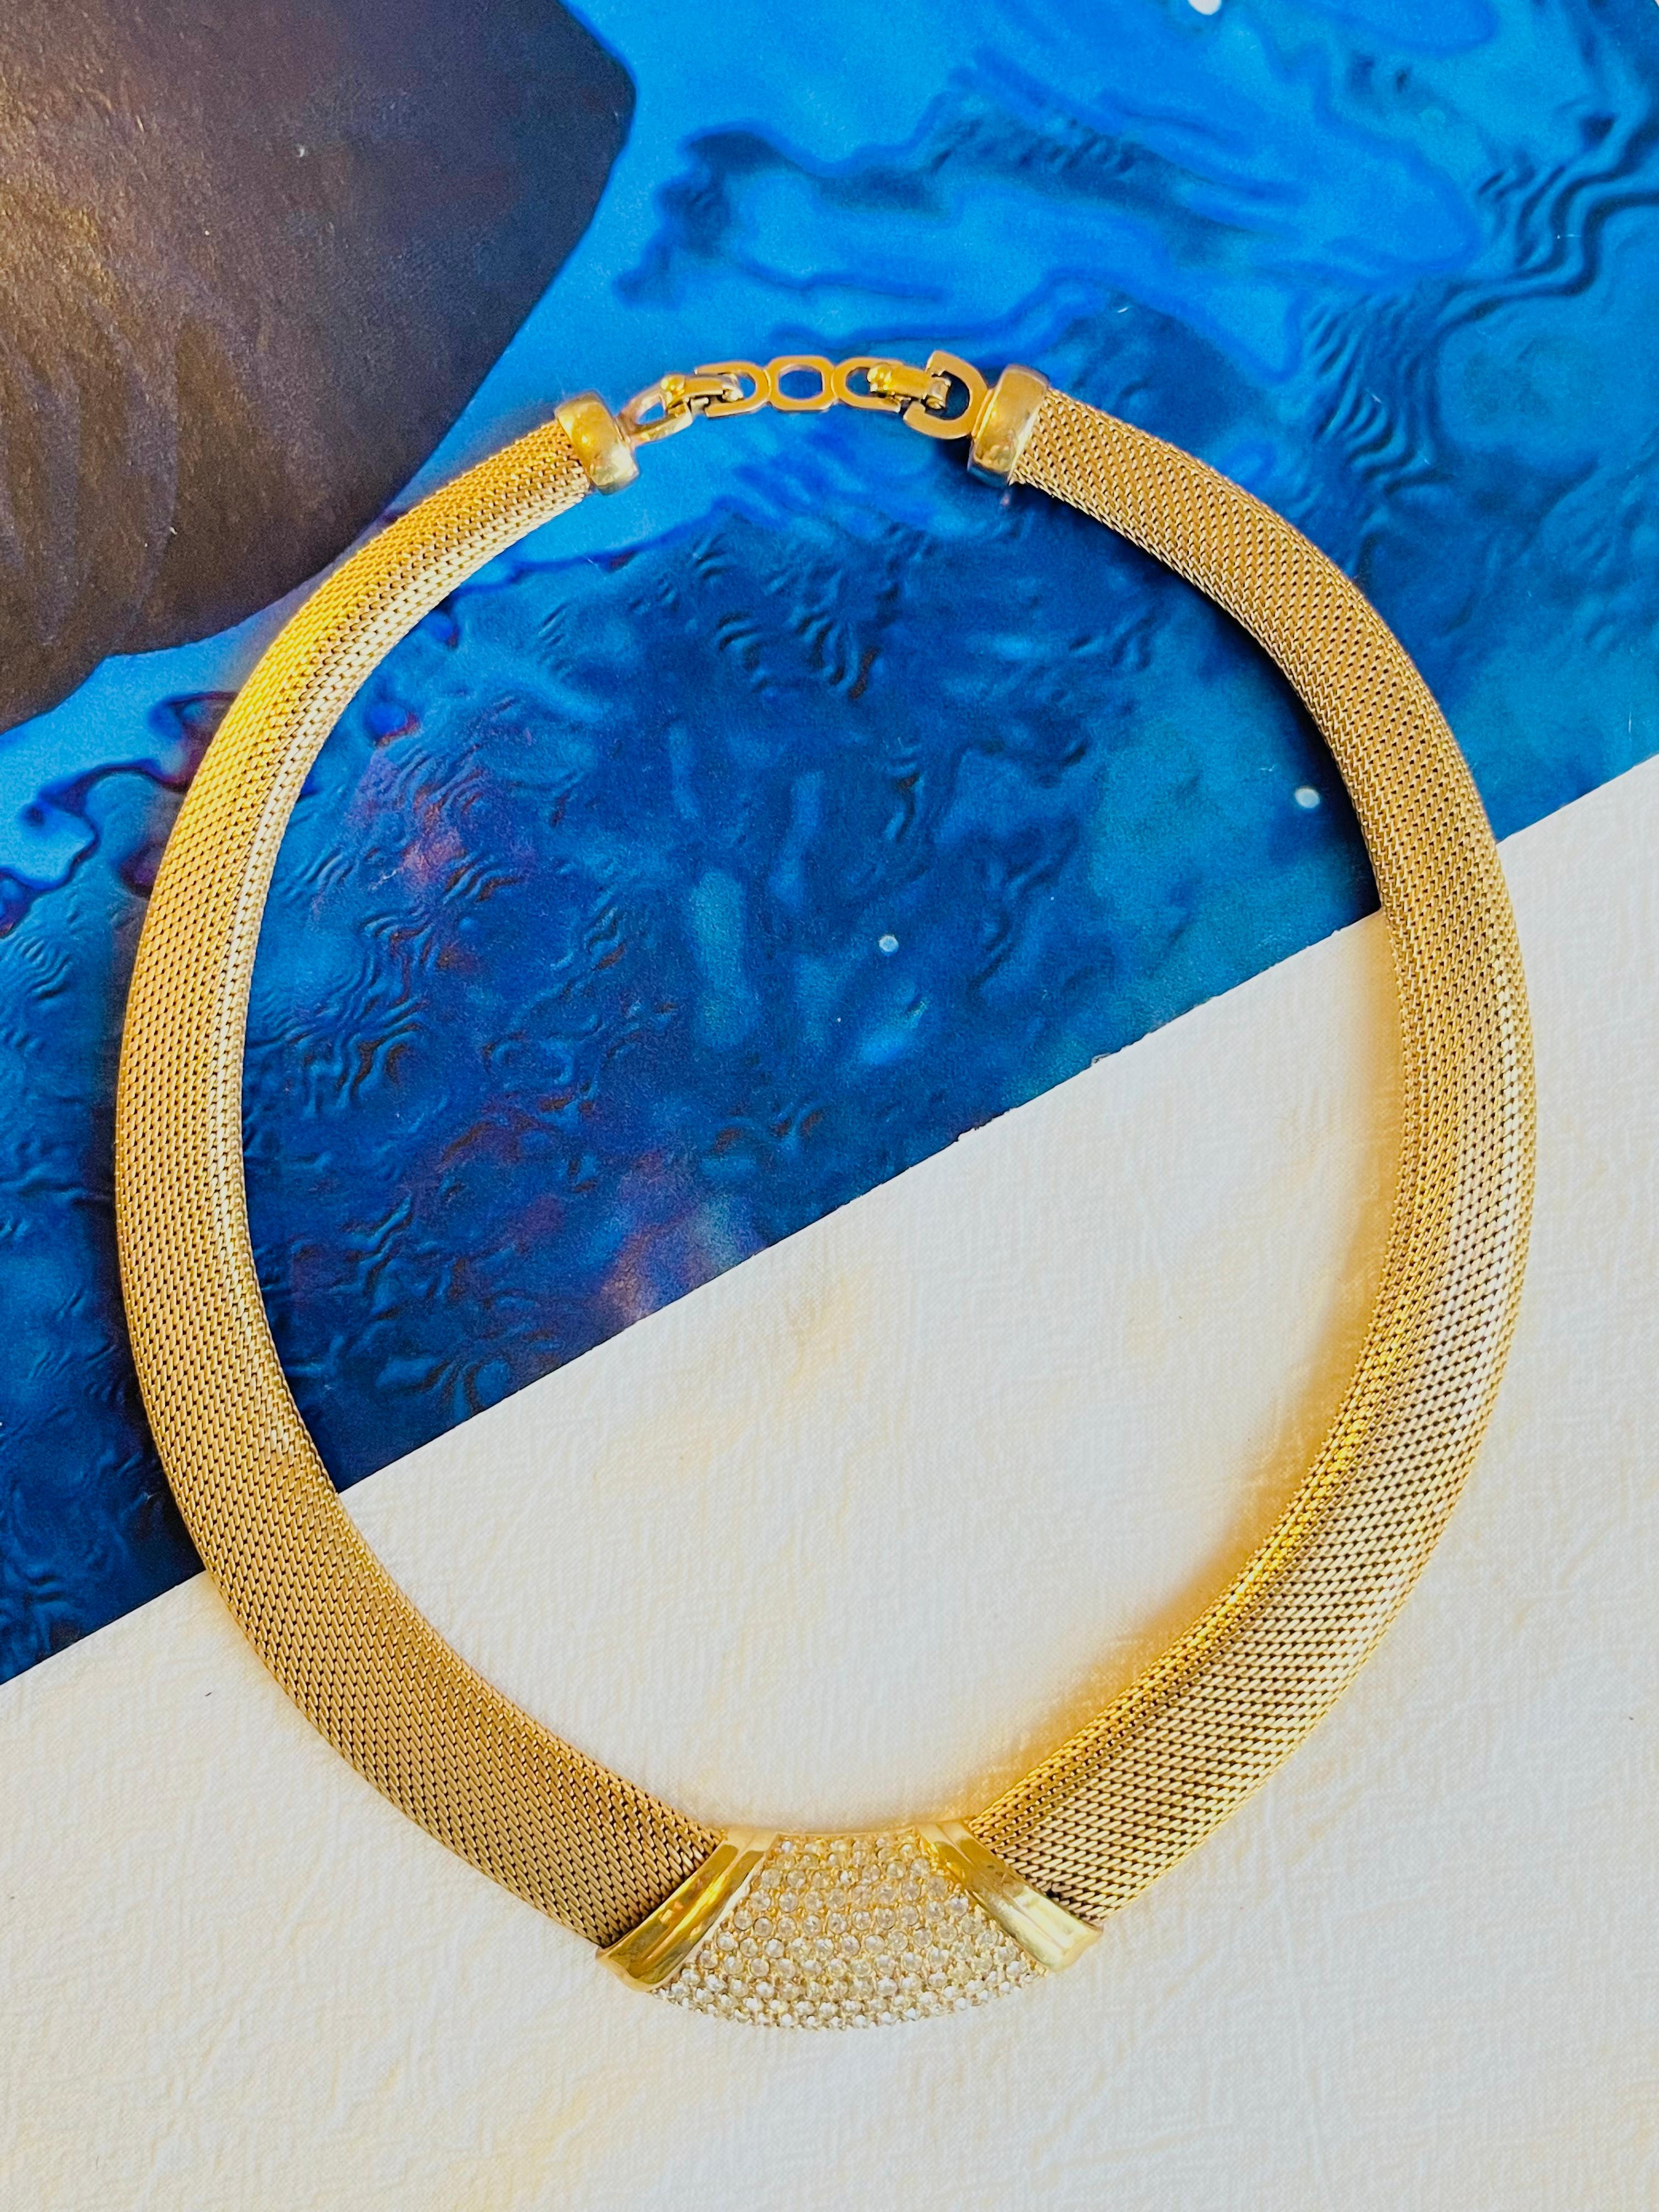 Christian Dior Vintage 1980s Crystals Pendant Chunky Snake Mesh Checklace, Gold Plated

Très bon état. Pas de perte de pierres ni de couleurs. 100% authentique.

Marqué 